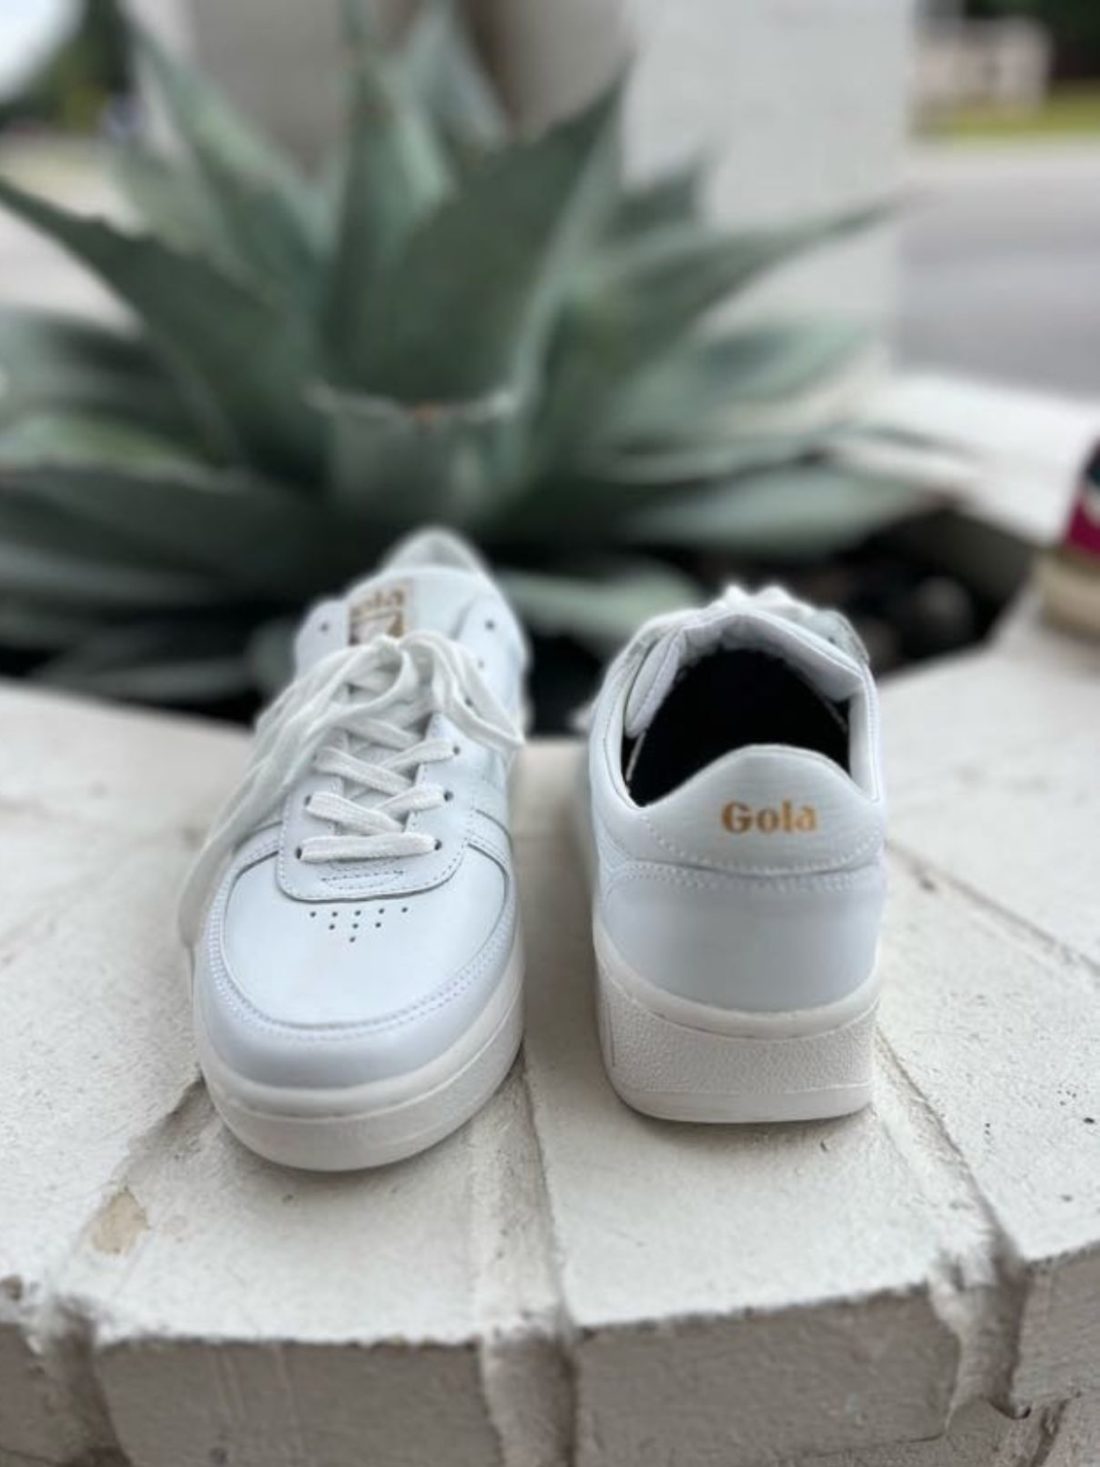 gola grandslam leather sneaker in white/white/white